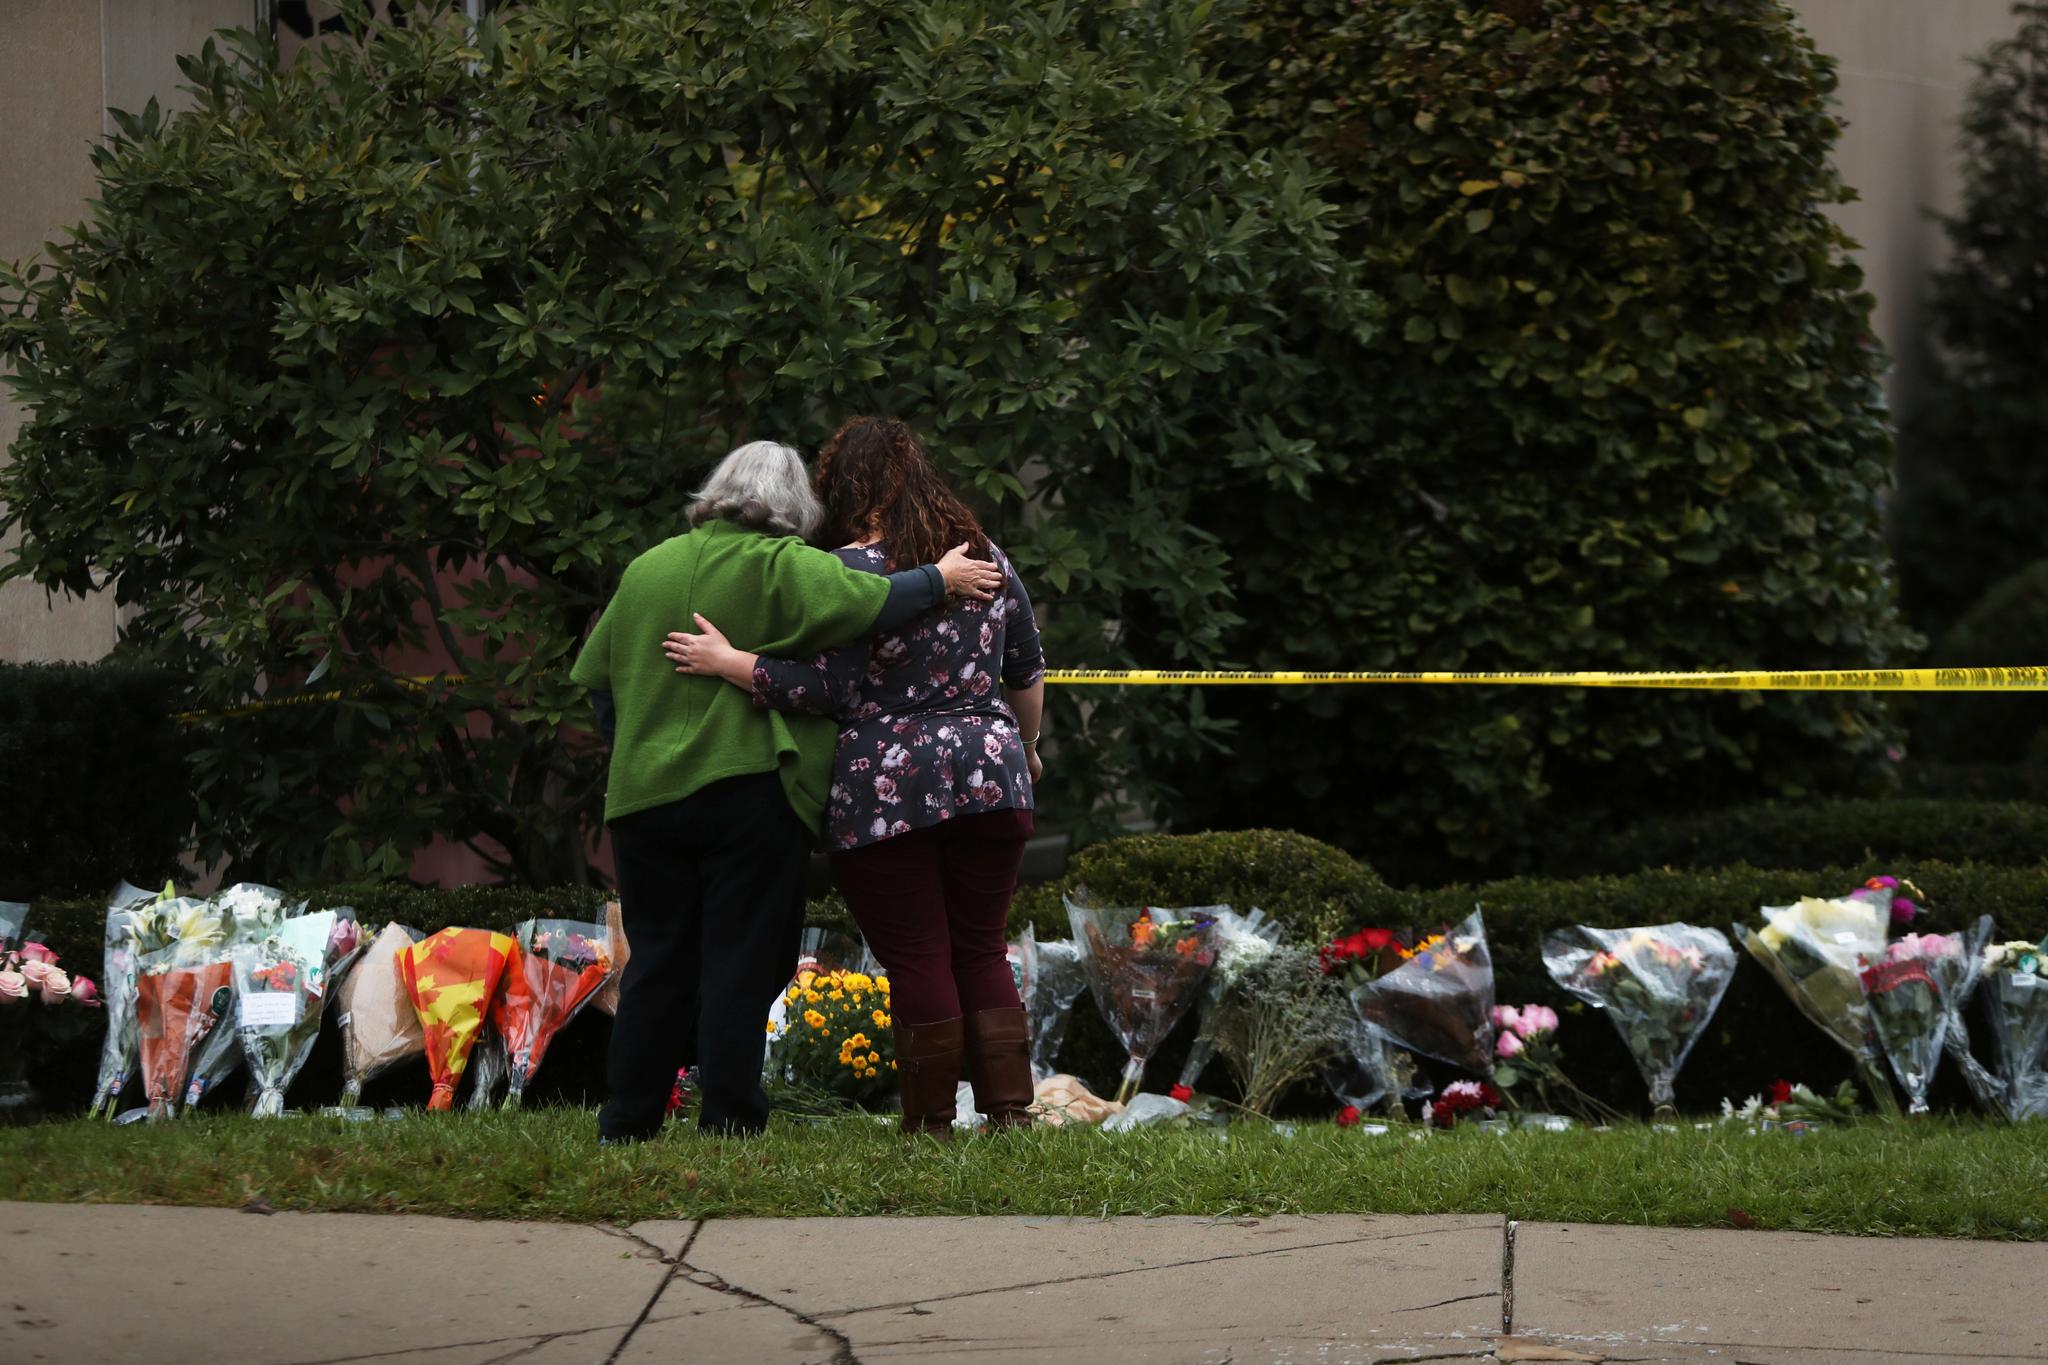  De 11 personene som ble drept i synagogeangrepet i Pittsburgh, var i alderen 54 til 97 år, opplyser amerikanske myndigheter  på en pressekonferanse søndag morgen.  